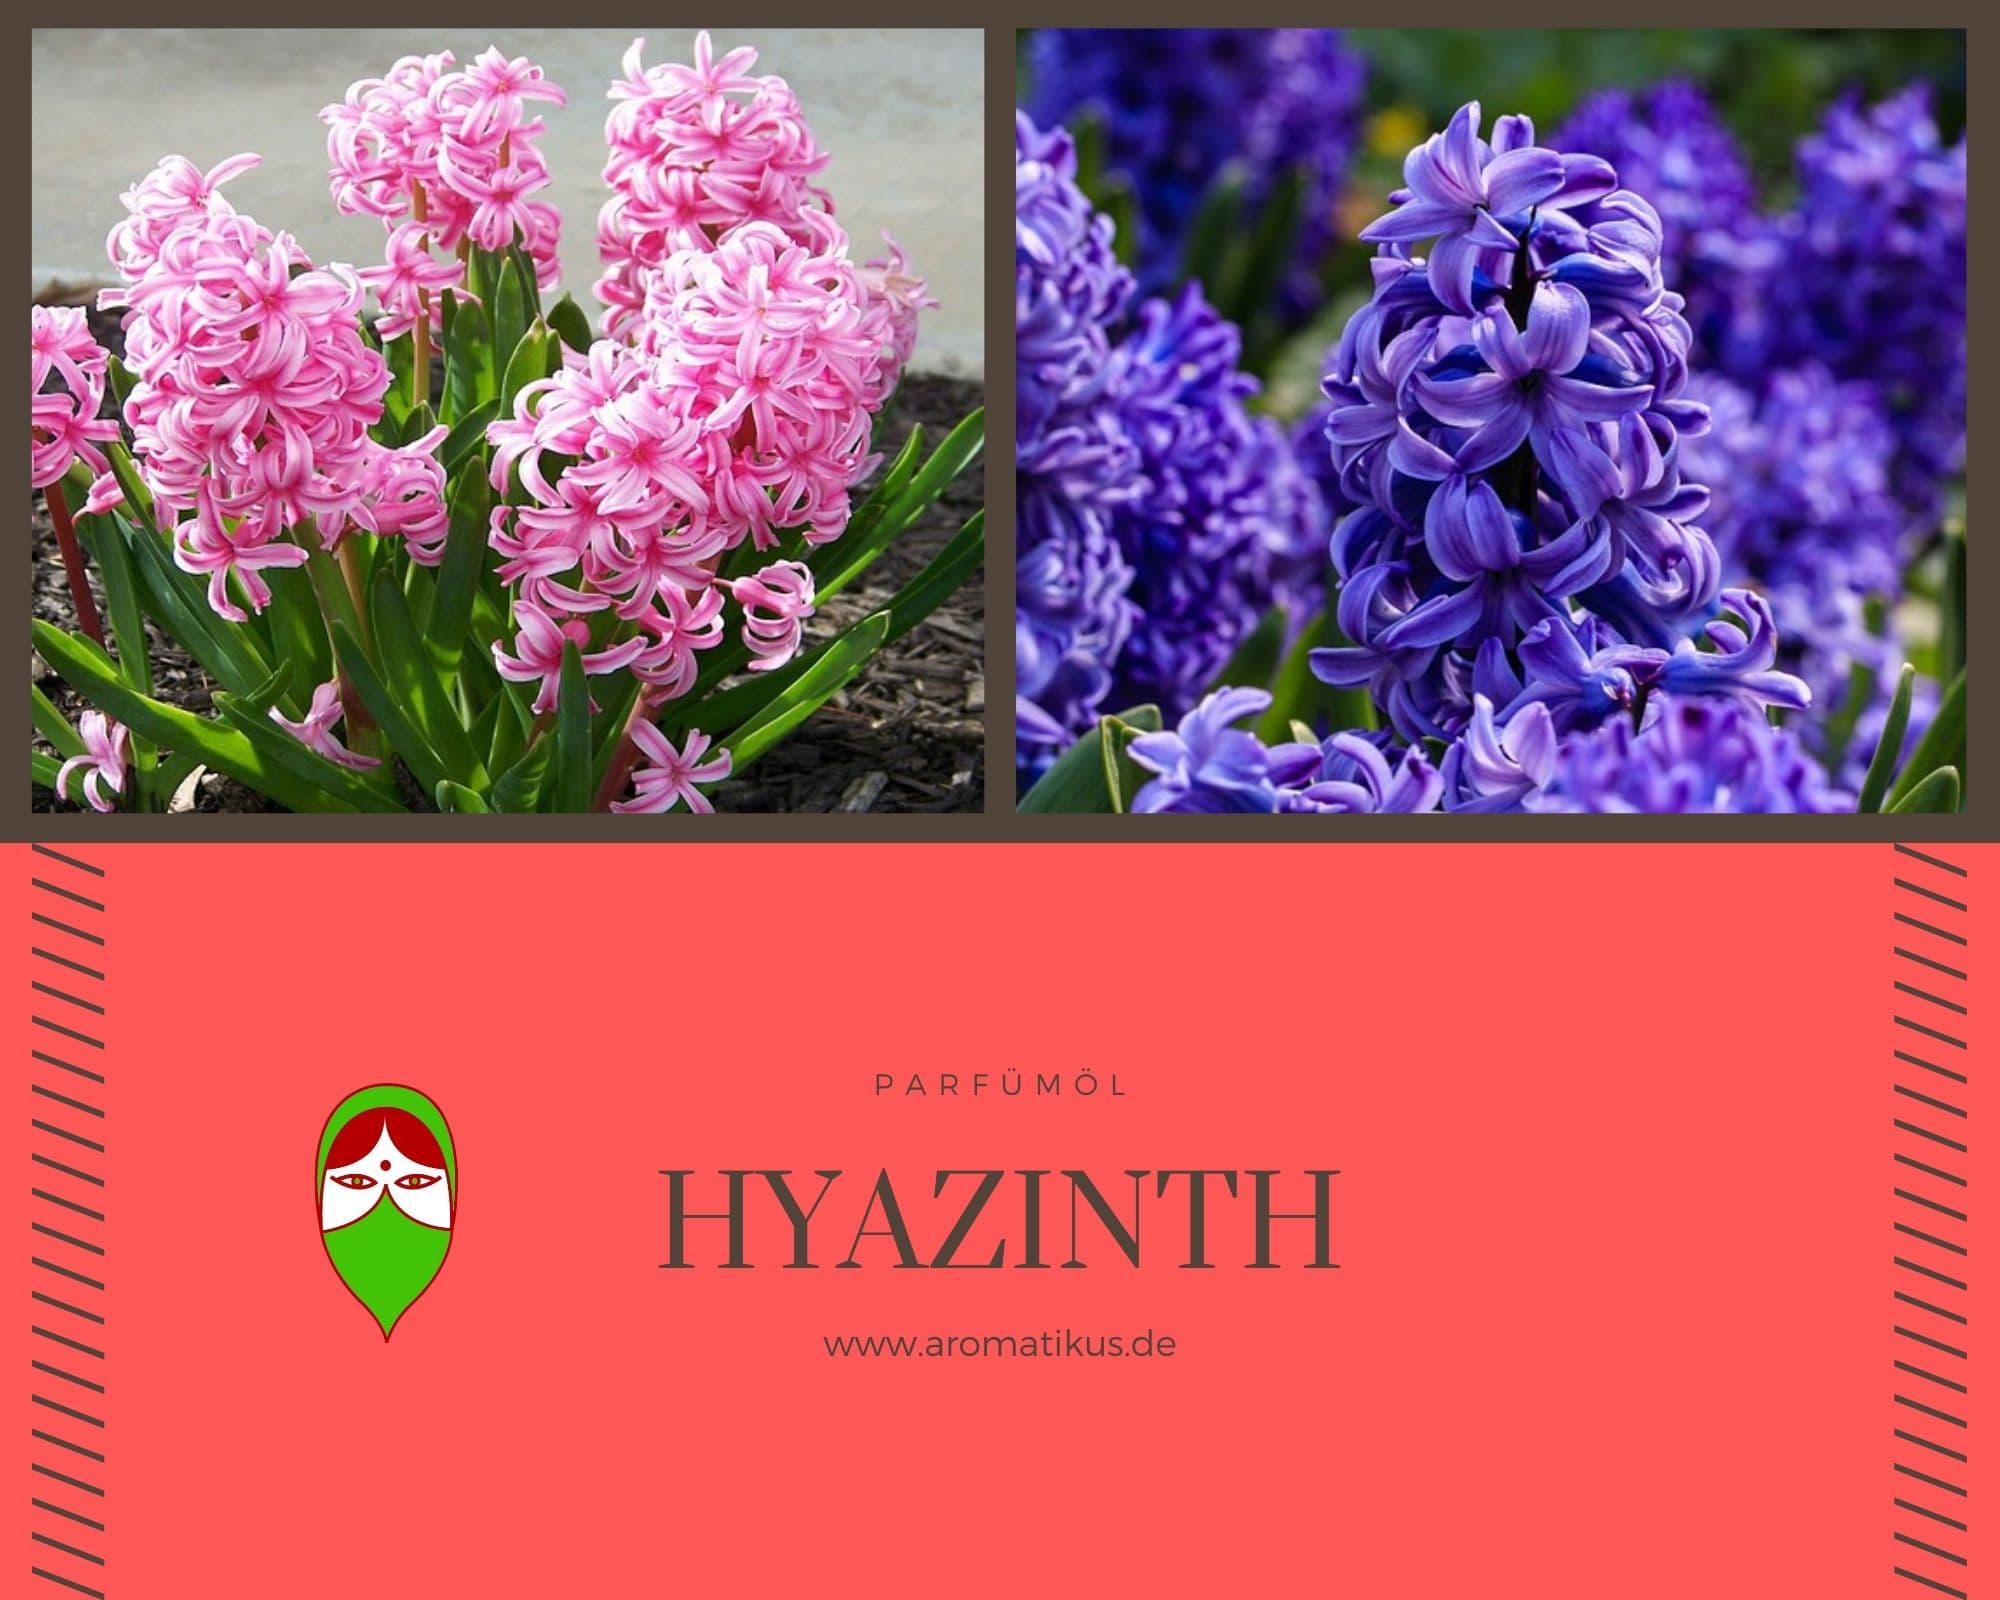 Ätherisches Duftöl Hyazinth als Parfümöl von Aromatikus